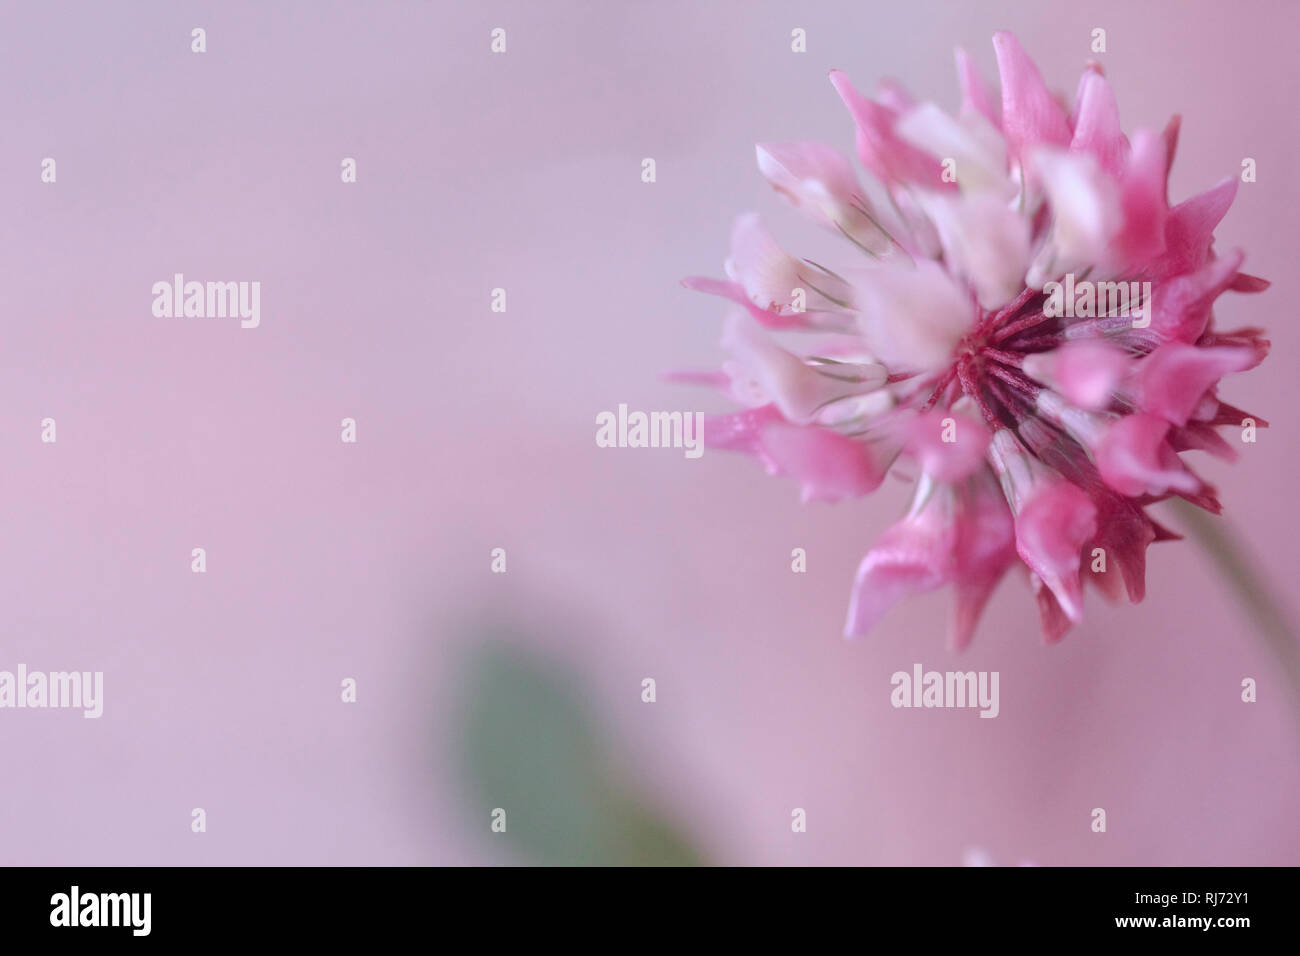 Nahaufnahme einer Kleeblüte (Trifolium) Stock Photo